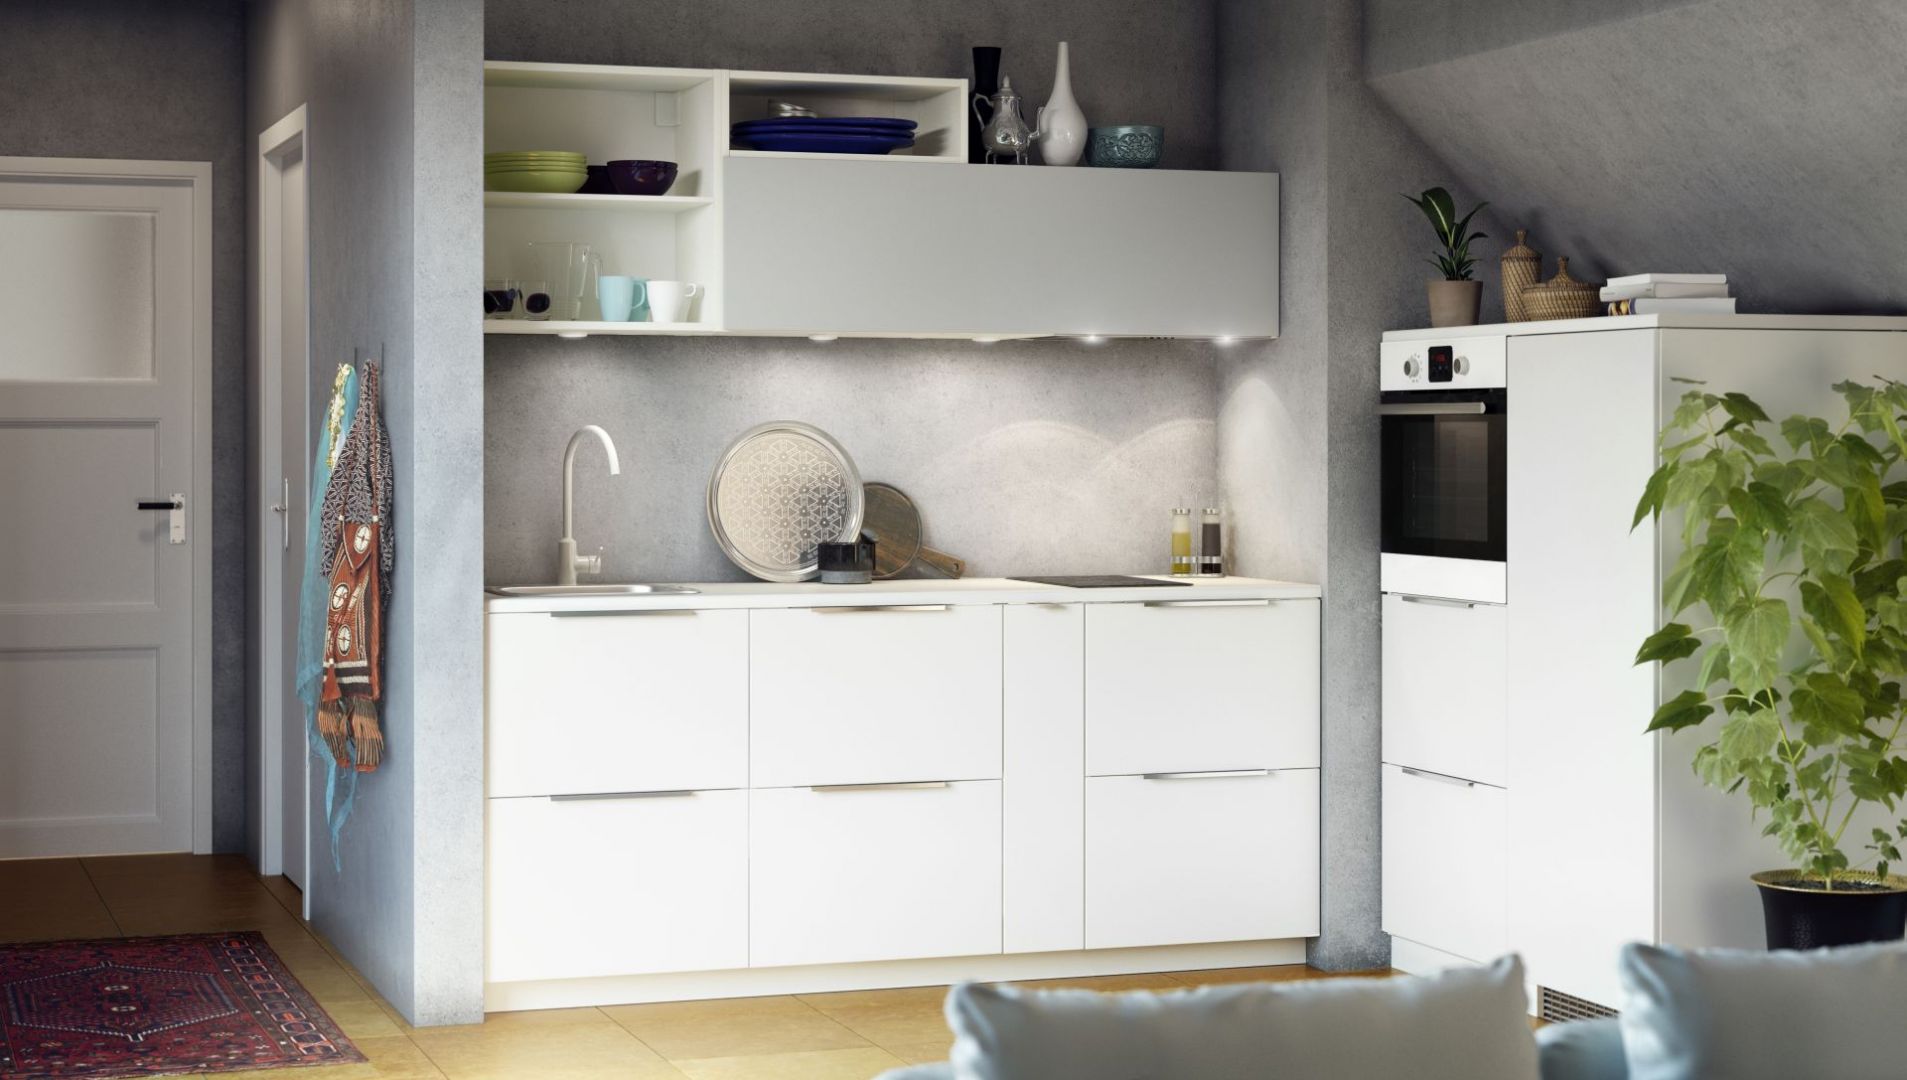 Biała zabudowa to praktyczne rozwiązanie. Jasna i przejrzysta kuchnia przyciąga uwagę. Fot. IKEA